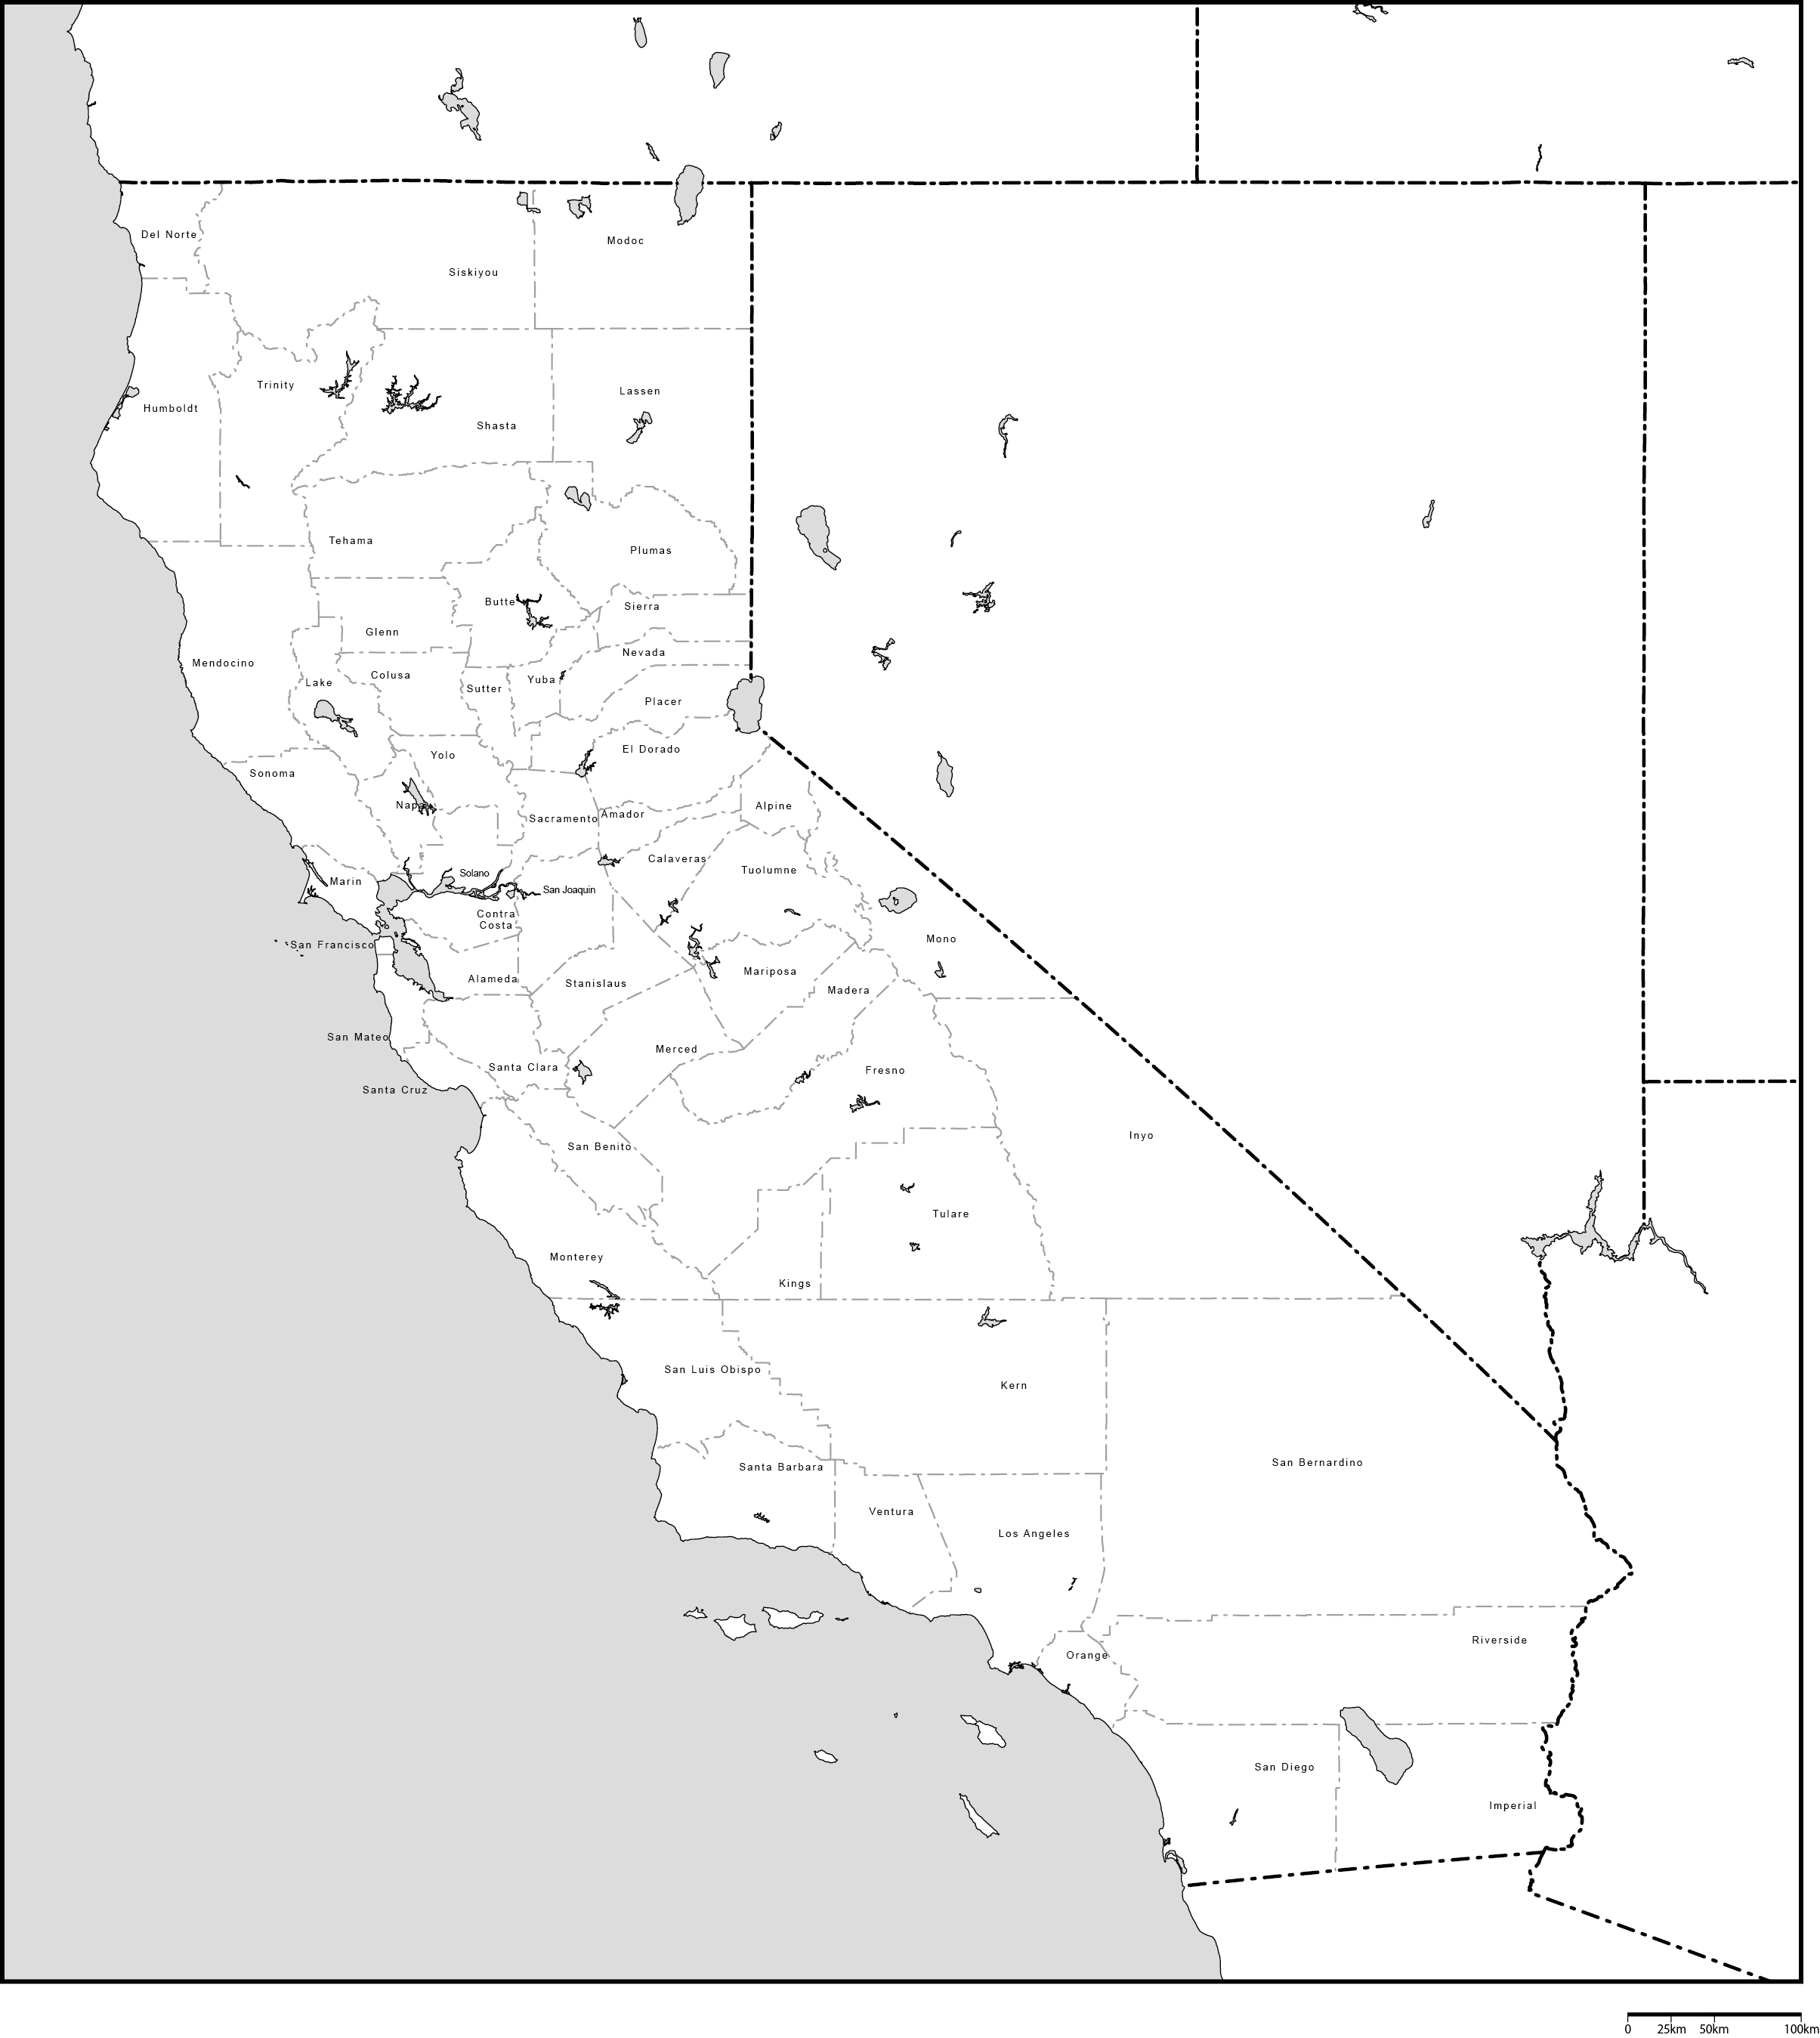 カリフォルニア州郡分け白地図郡名あり(英語)フリーデータの画像